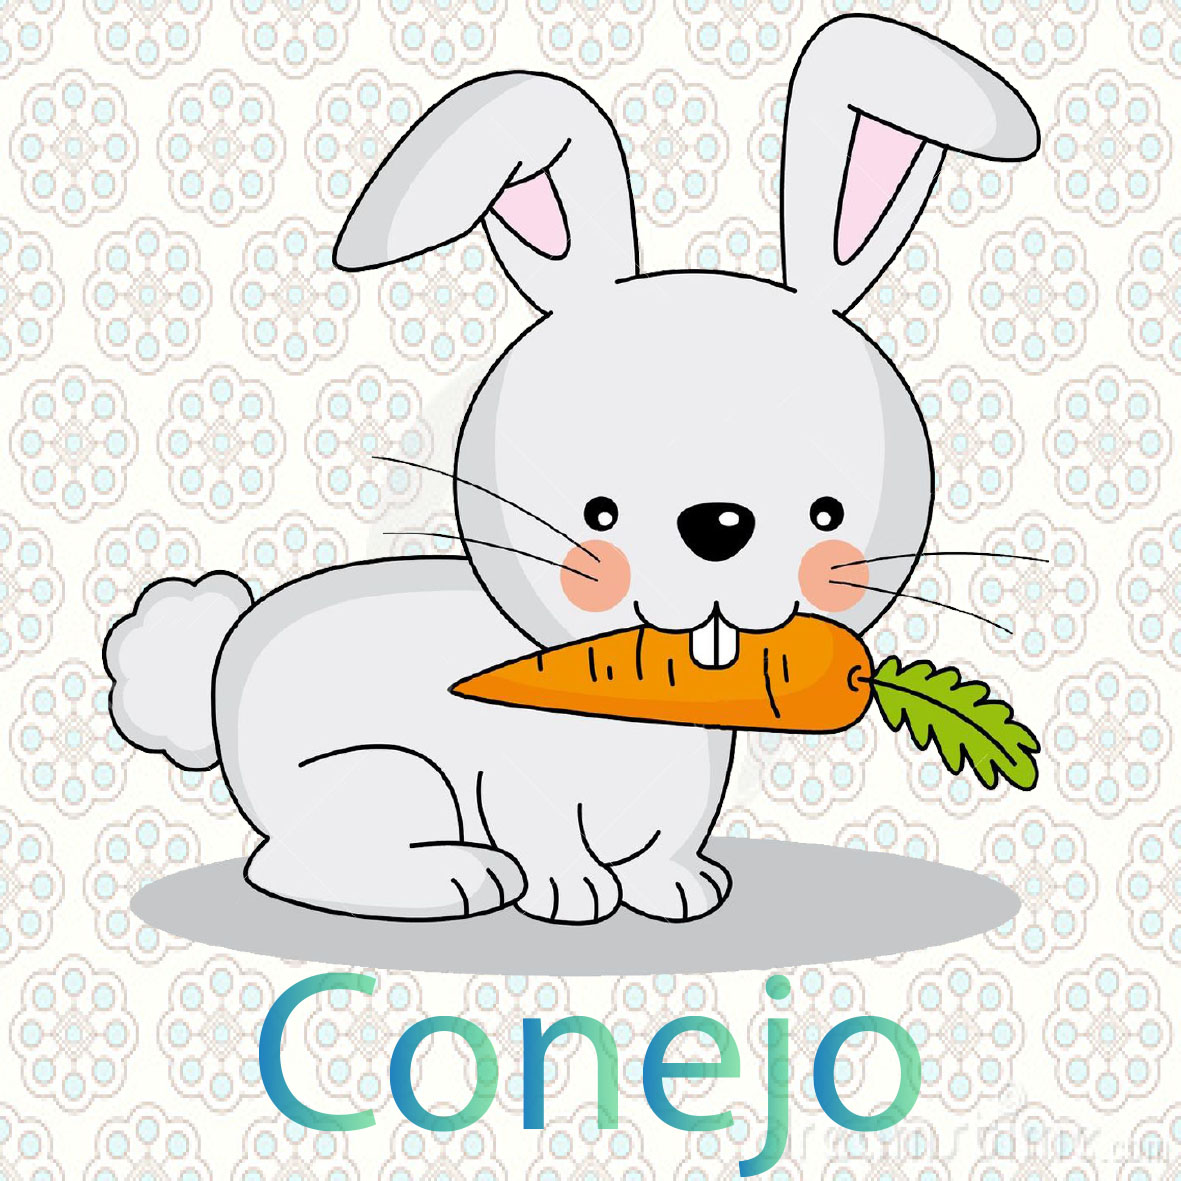 imagen de un conejo, con muy suaves por lo general son de color blanco , los conejos comen zanahorias 